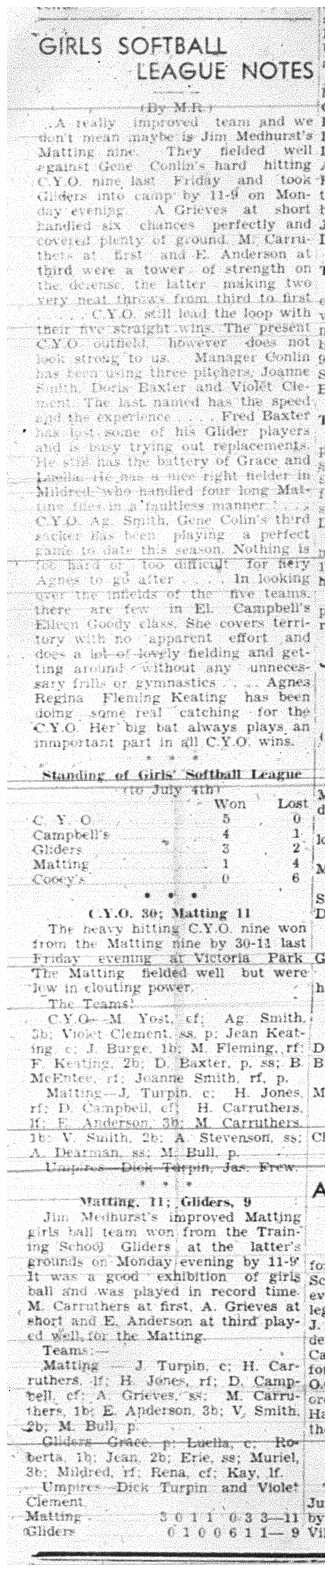 1944-07-06 Softball -Girls League Notes & Standings